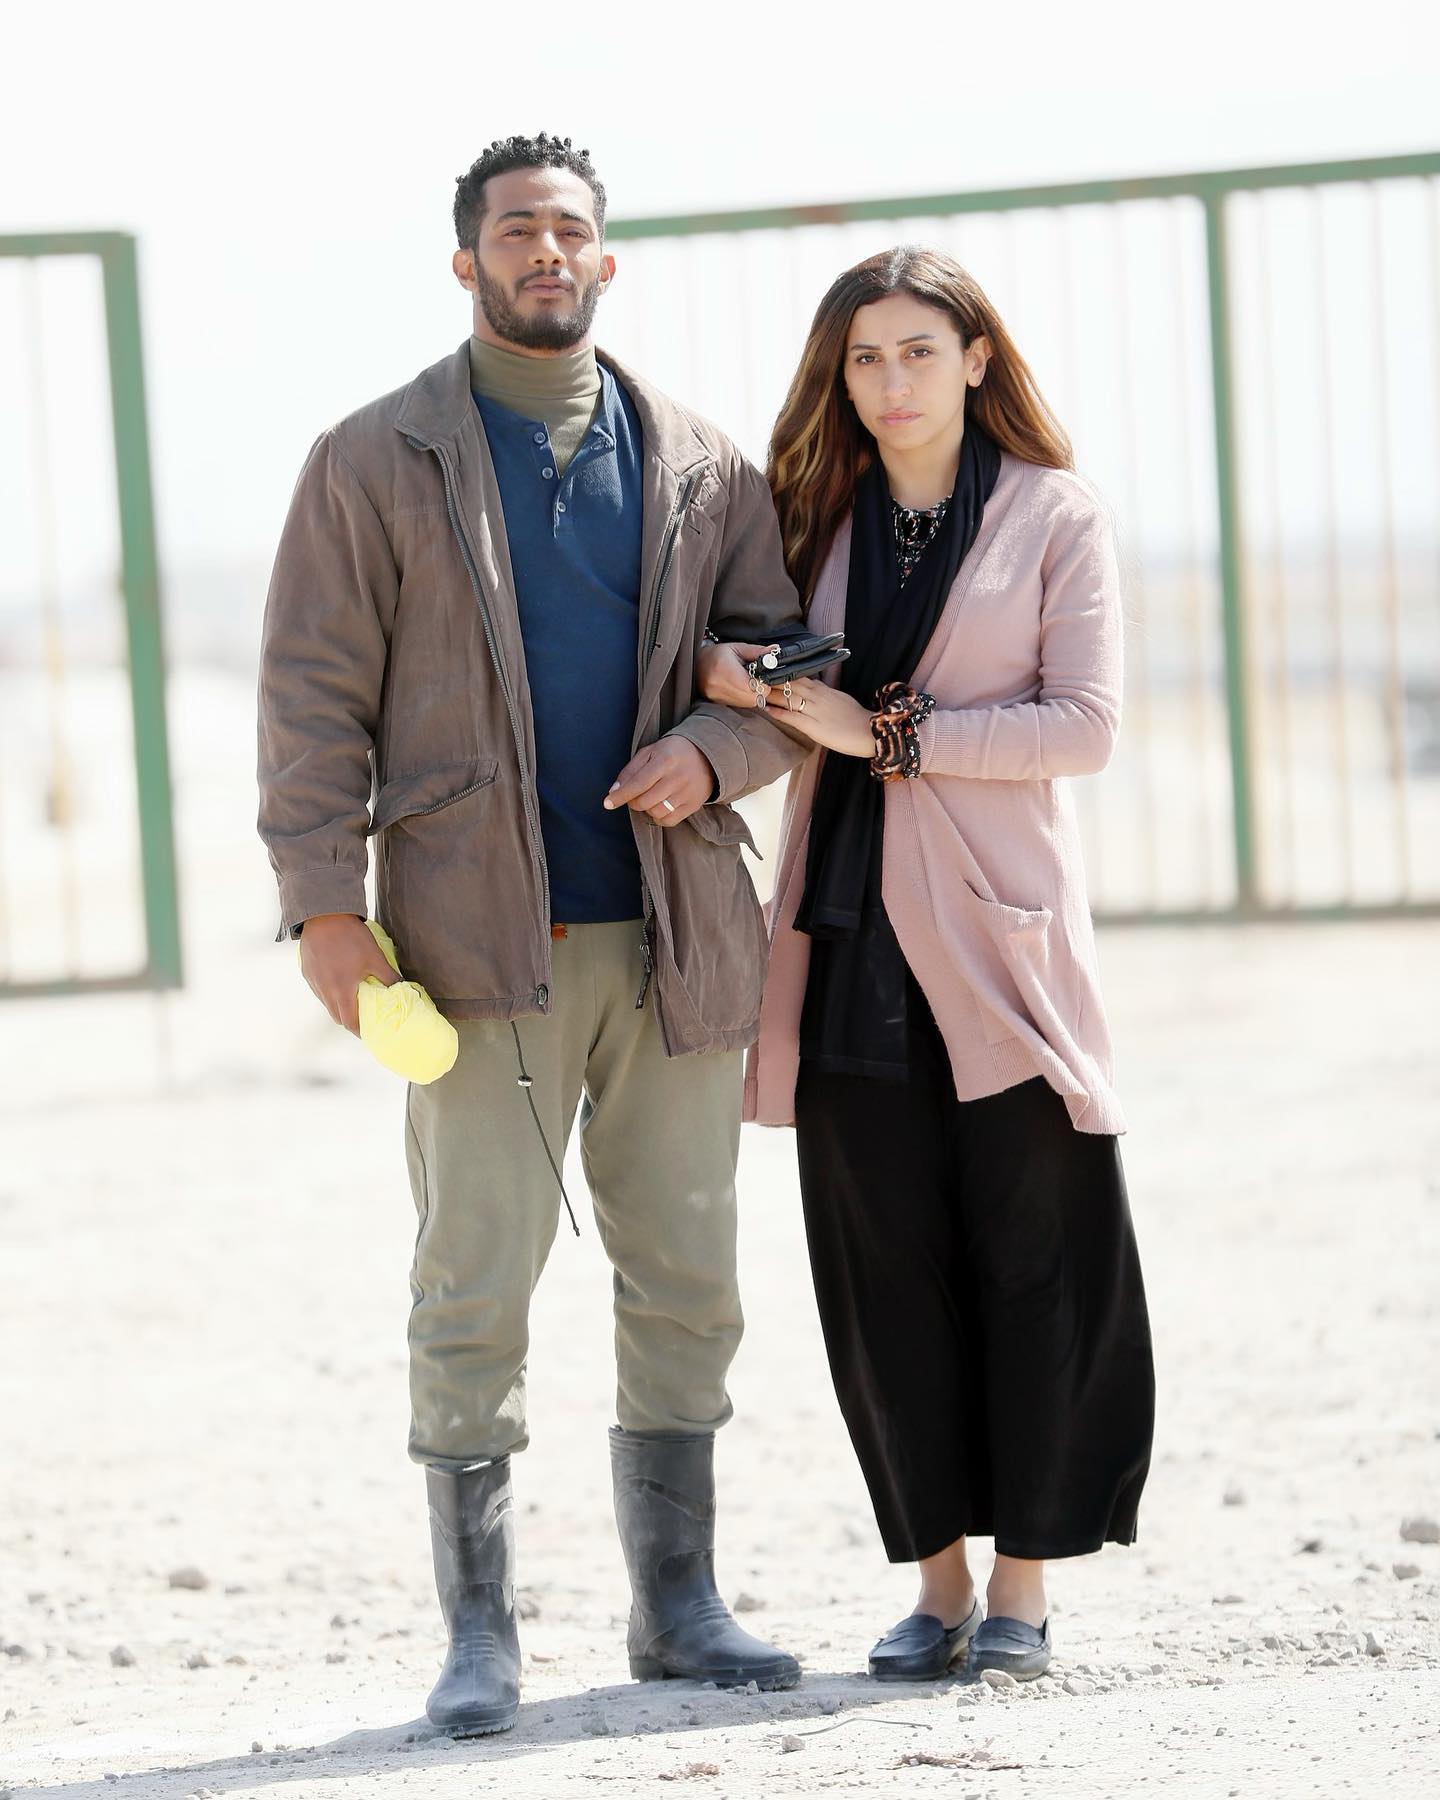 دينا الشربيني ومحمد رمضان من مسلسل المشوار